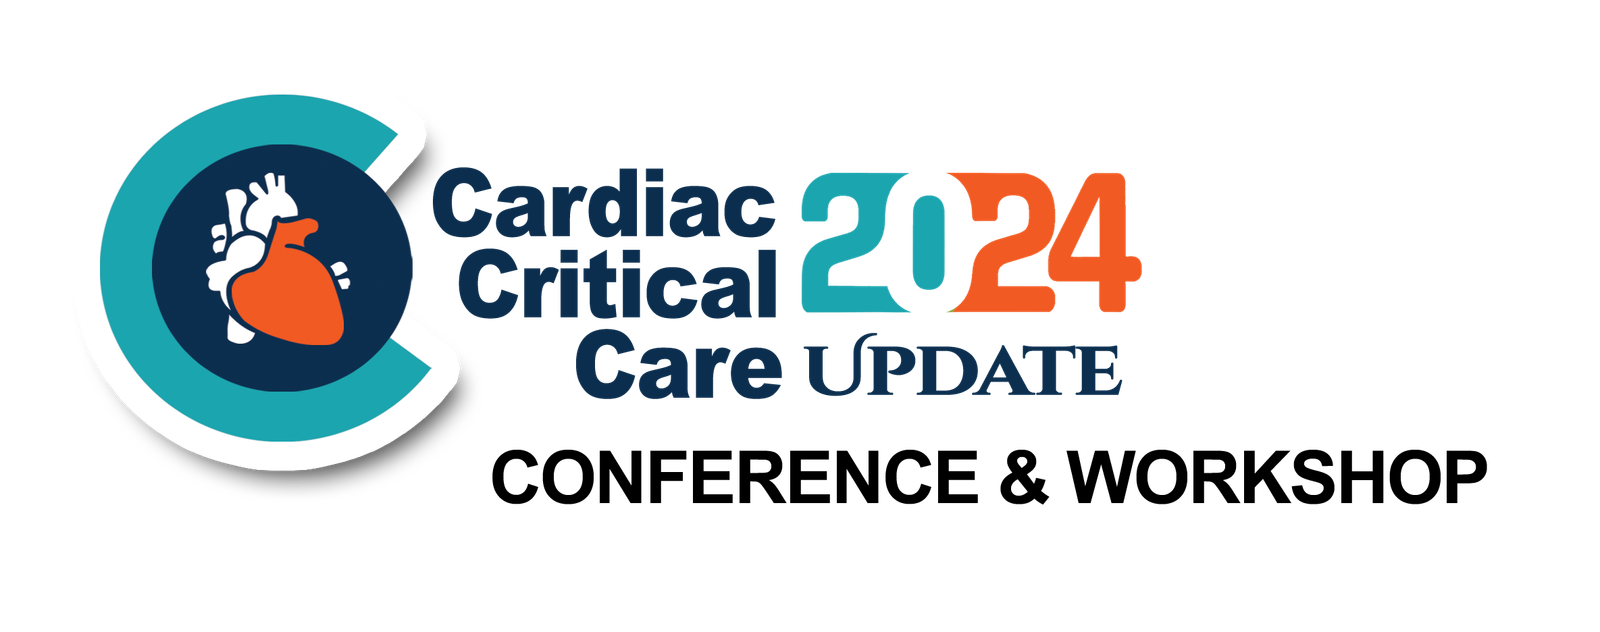 Cardiac Critical Care Update 2024 CRITICARE